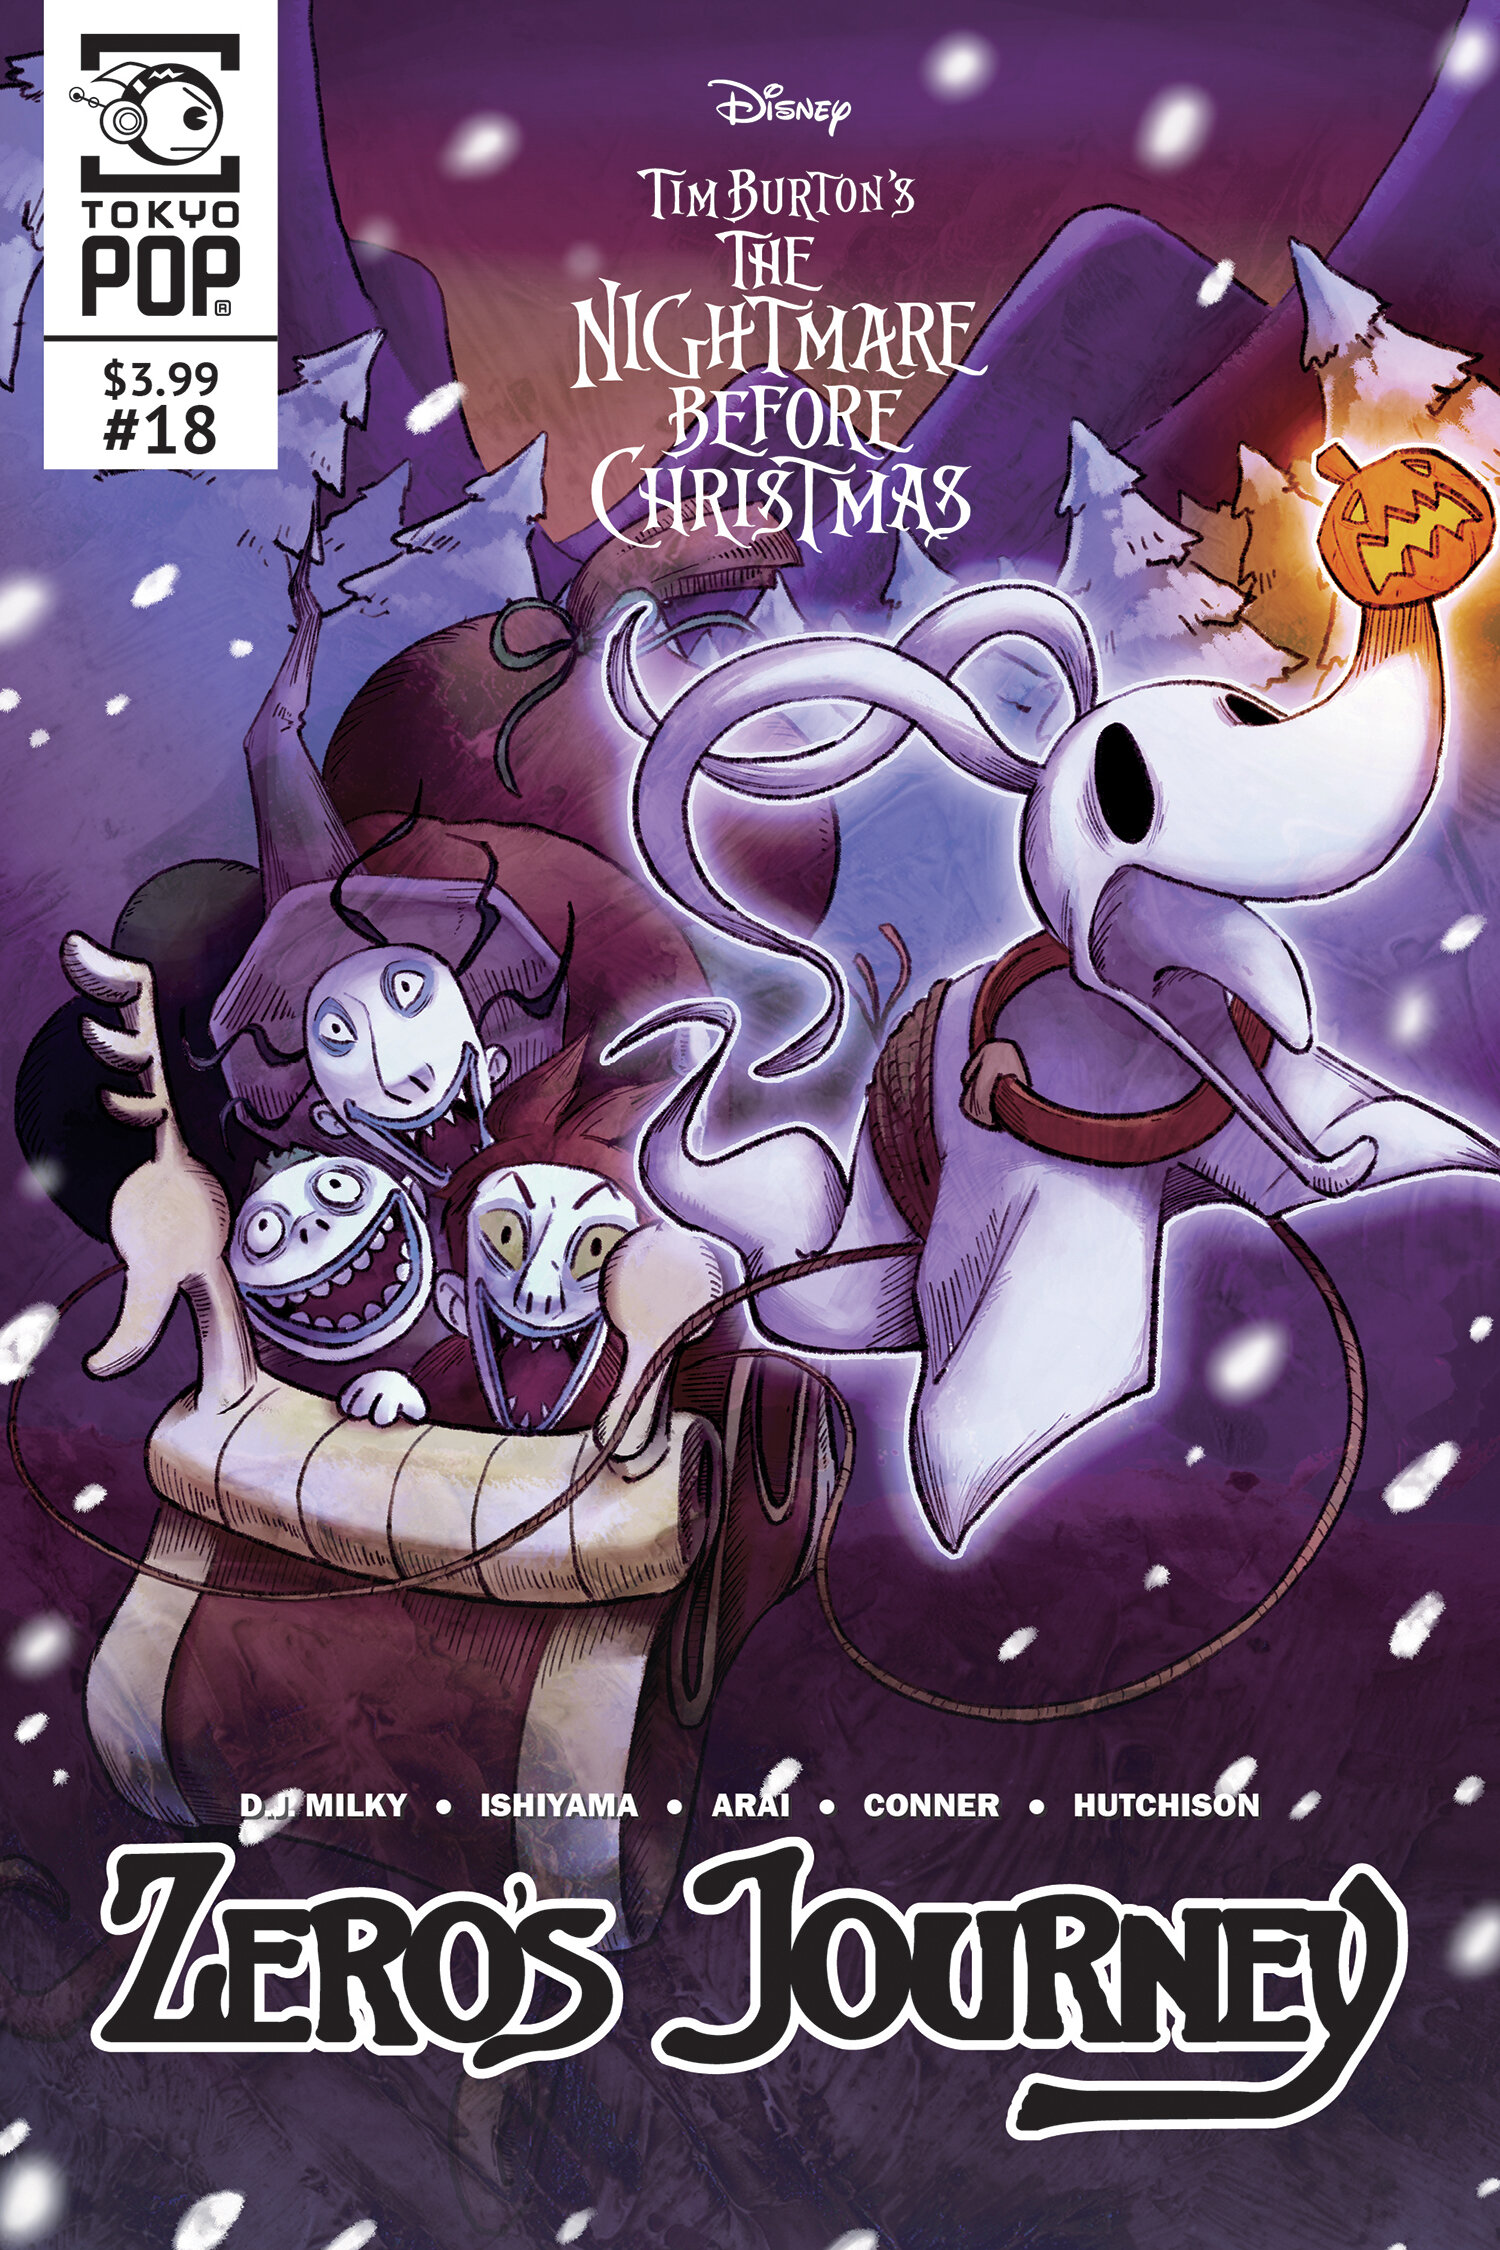  Disney Manga: The Nightmare Before Christmas - Zero's Journey, Issue #18